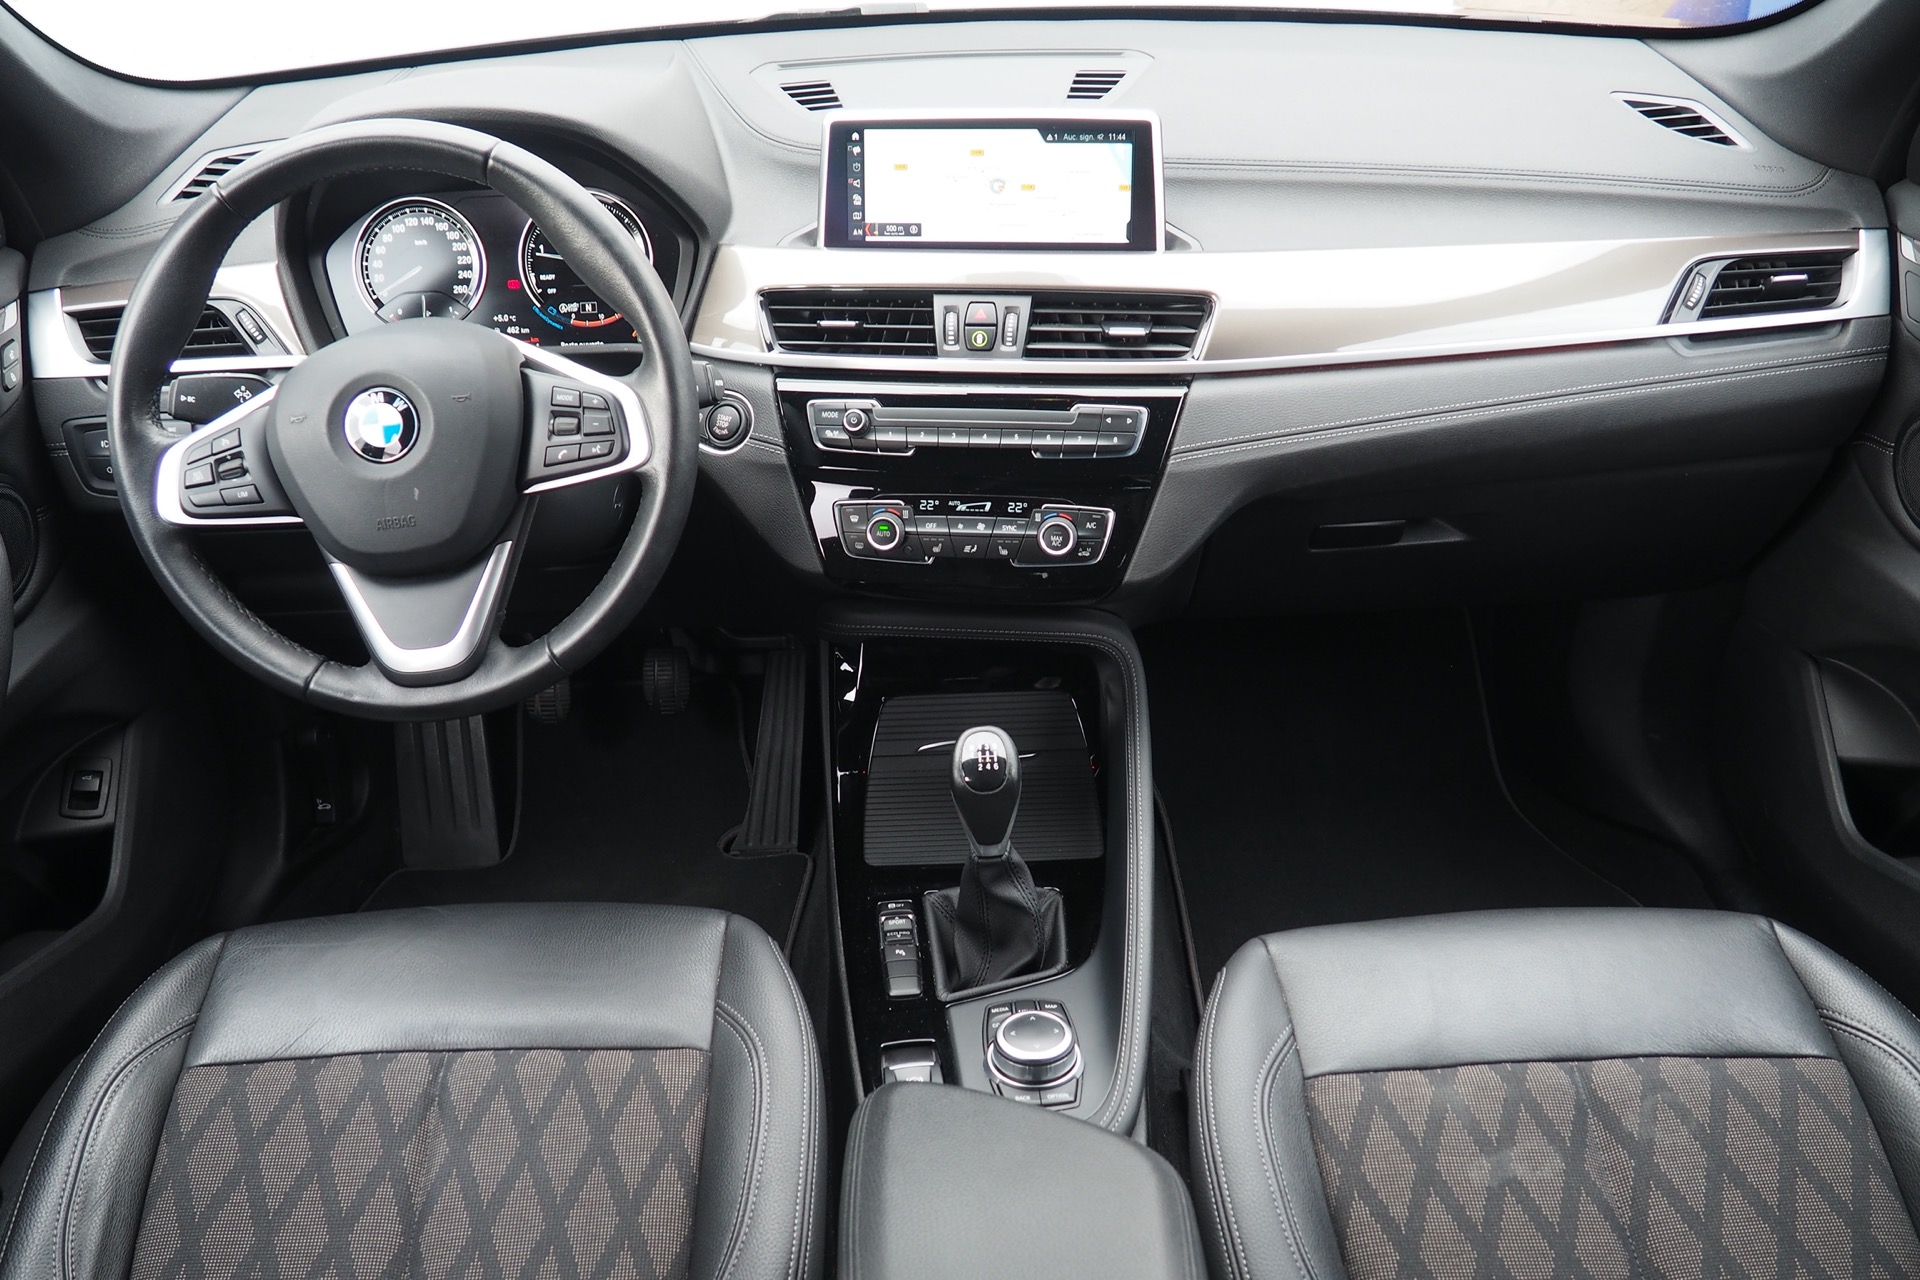 
								BMW X1 18i 140 Xline + Options, 1ère main – Garantie 12 Mois complet									